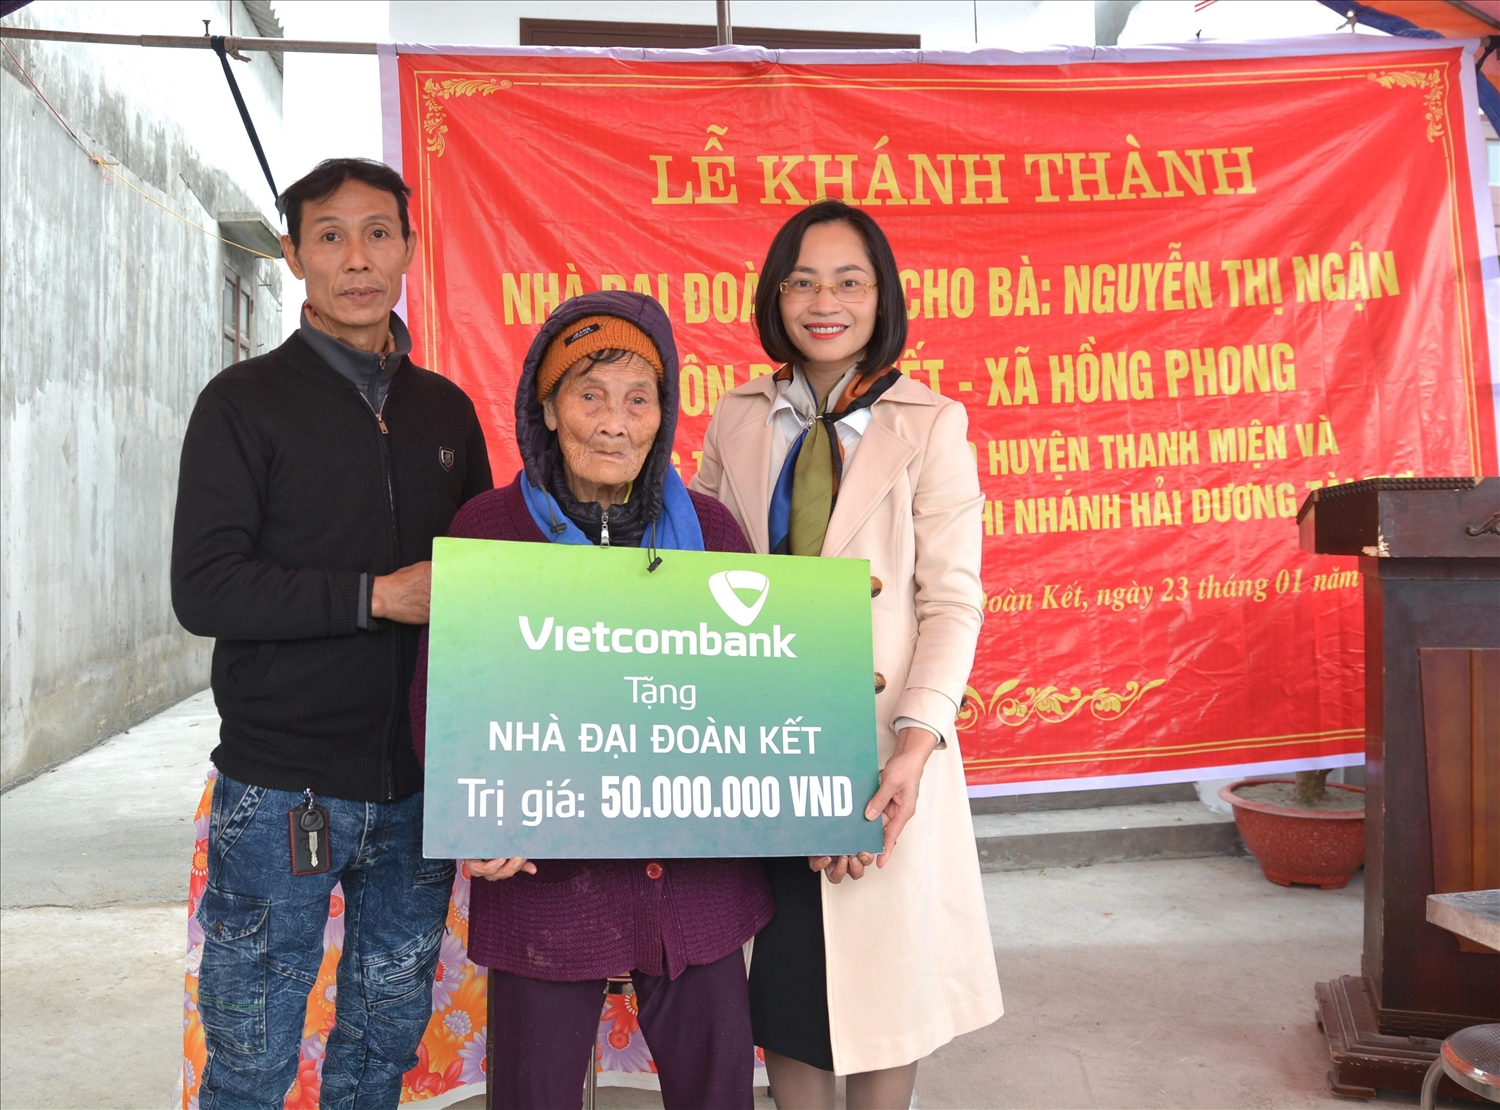 Bà Phạm Minh Đào - Phó Giám đốc Vietcombank Hải Dương (ngoài cùng bên phải) trao biển tặng nhà đại đoàn kết cho gia đình bà Nguyễn Thị Ngận, hộ nghèo thuộc huyện Thanh Miện, tỉnh Hải Dương